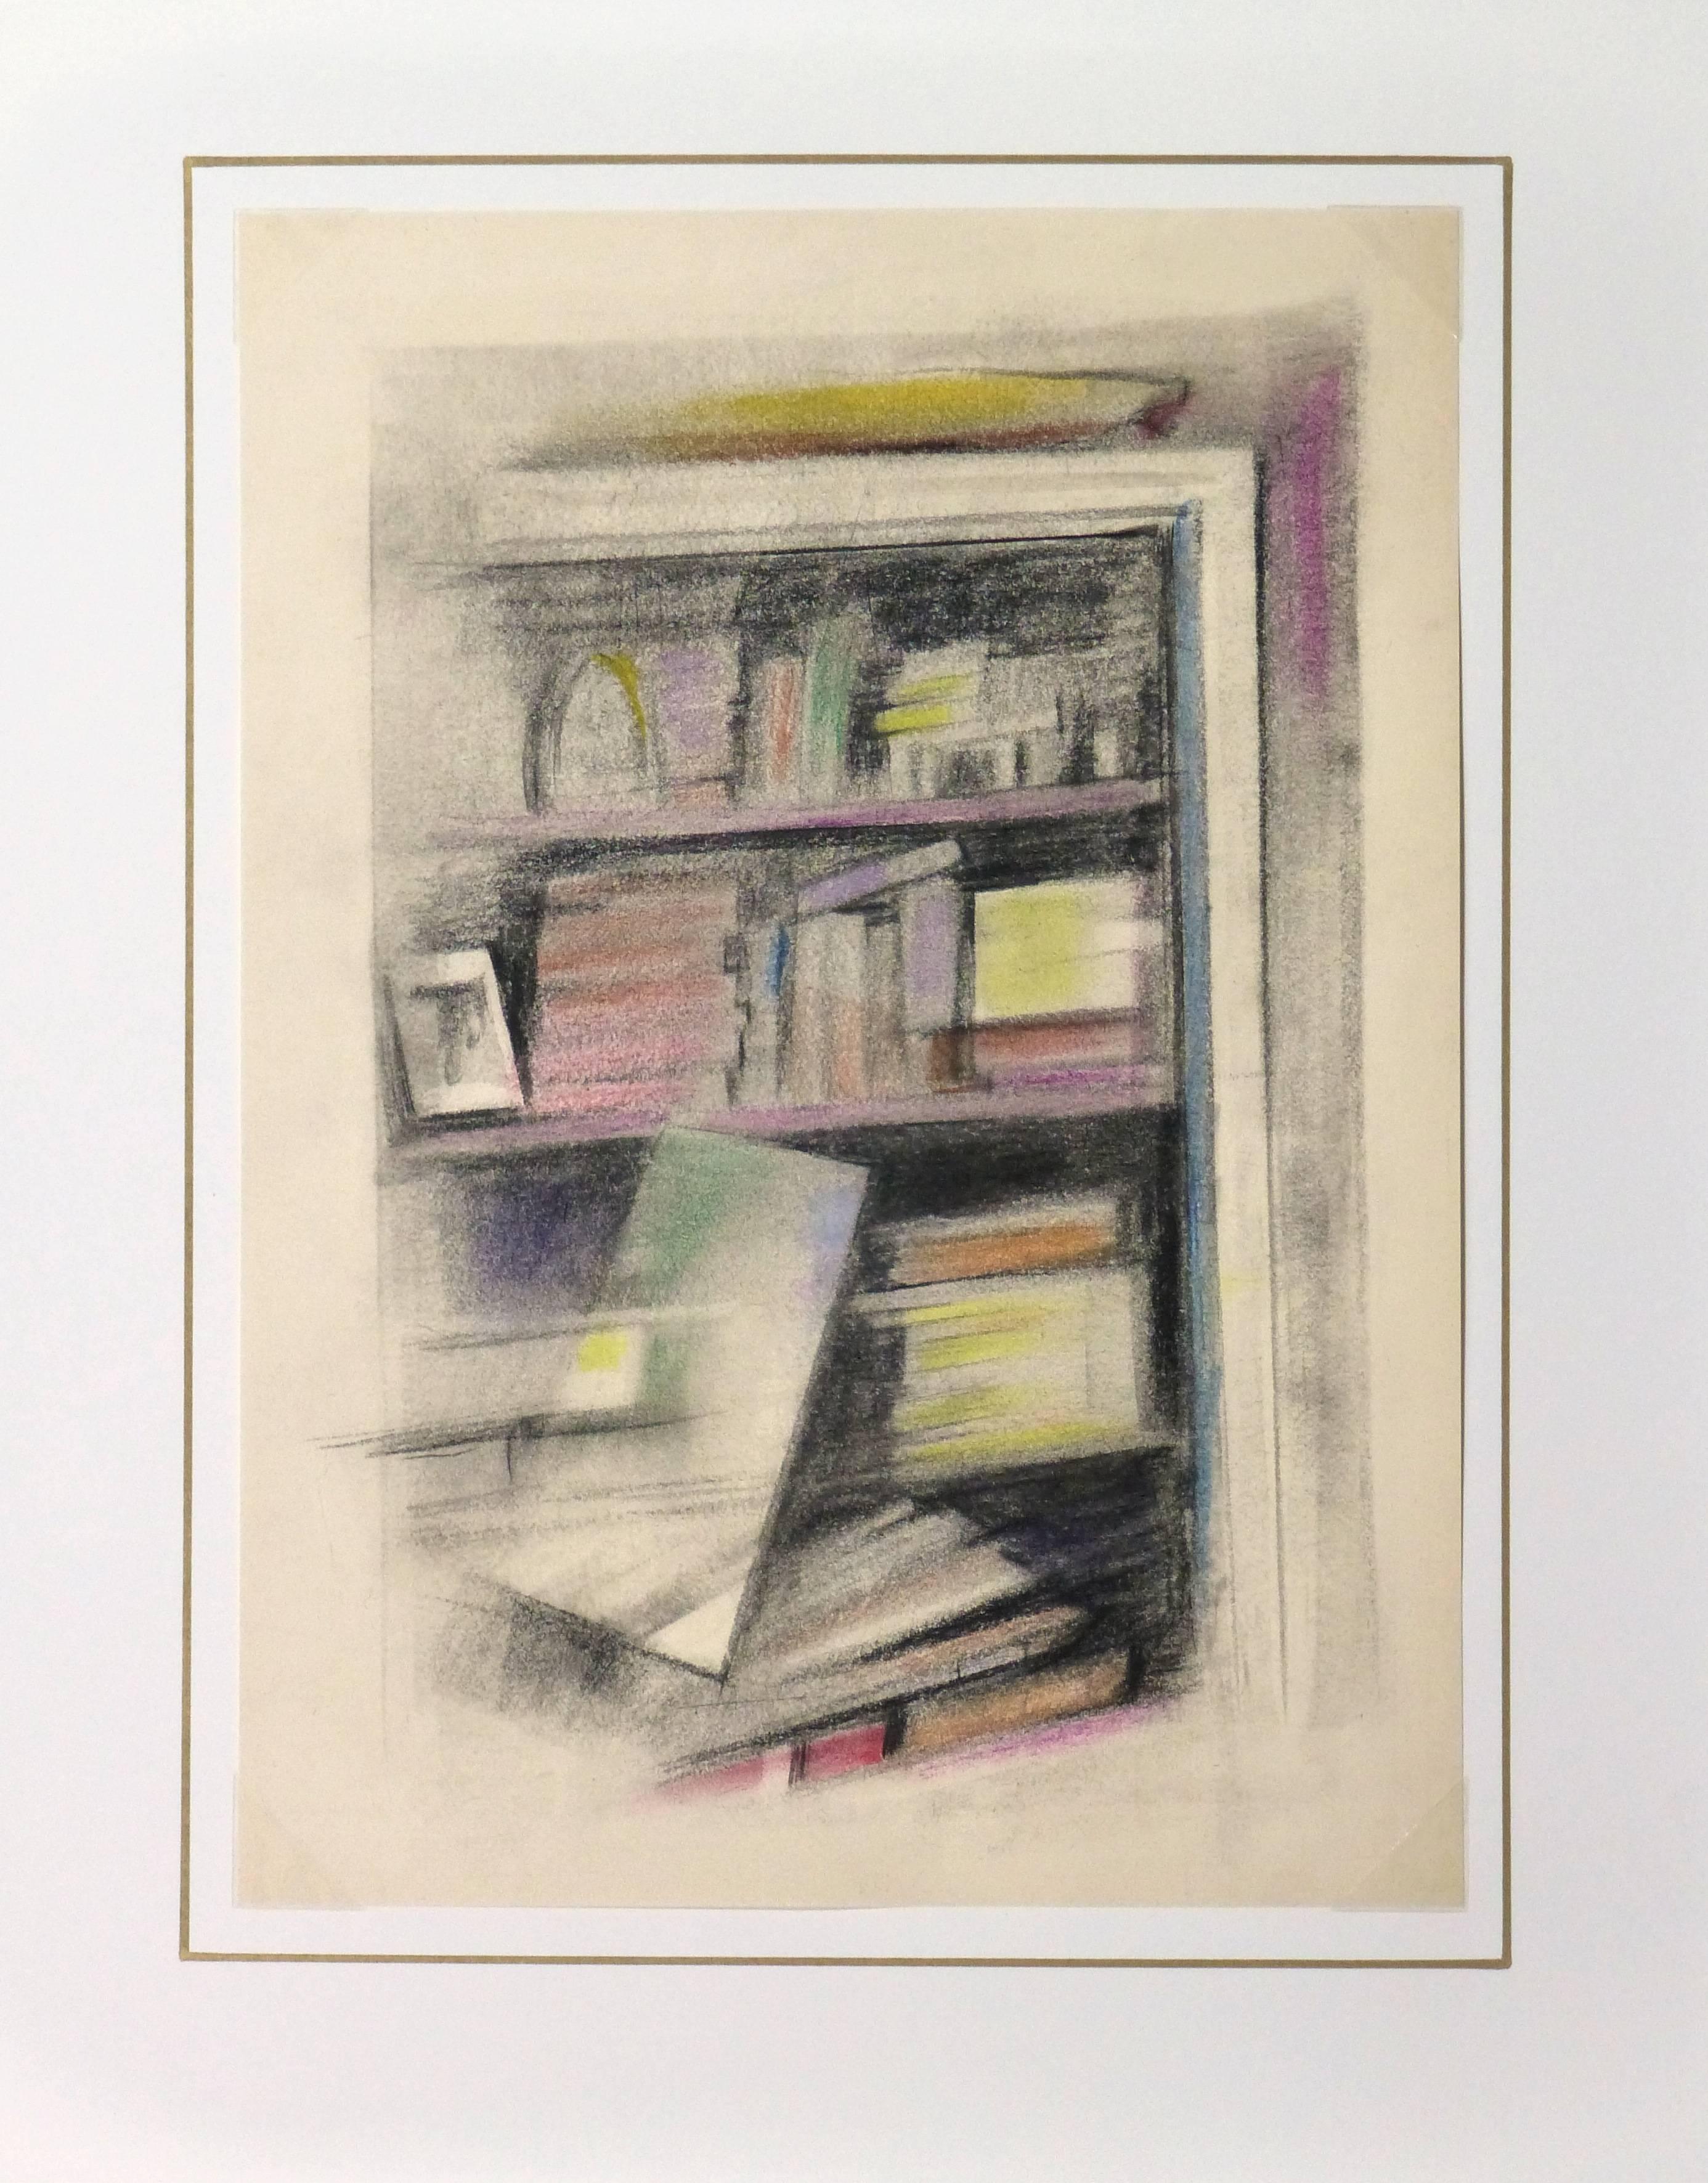 Zartfarbige Ölpastell-Abstraktion eines einzelnen Buches, das aus einem vollen Bücherregal fällt, wie eine Zeitlupenszene aus einem Traum, von Pollasson, um 1990.

Originalkunstwerk auf Papier auf einem weißen Passepartout mit Goldrand. Inklusive